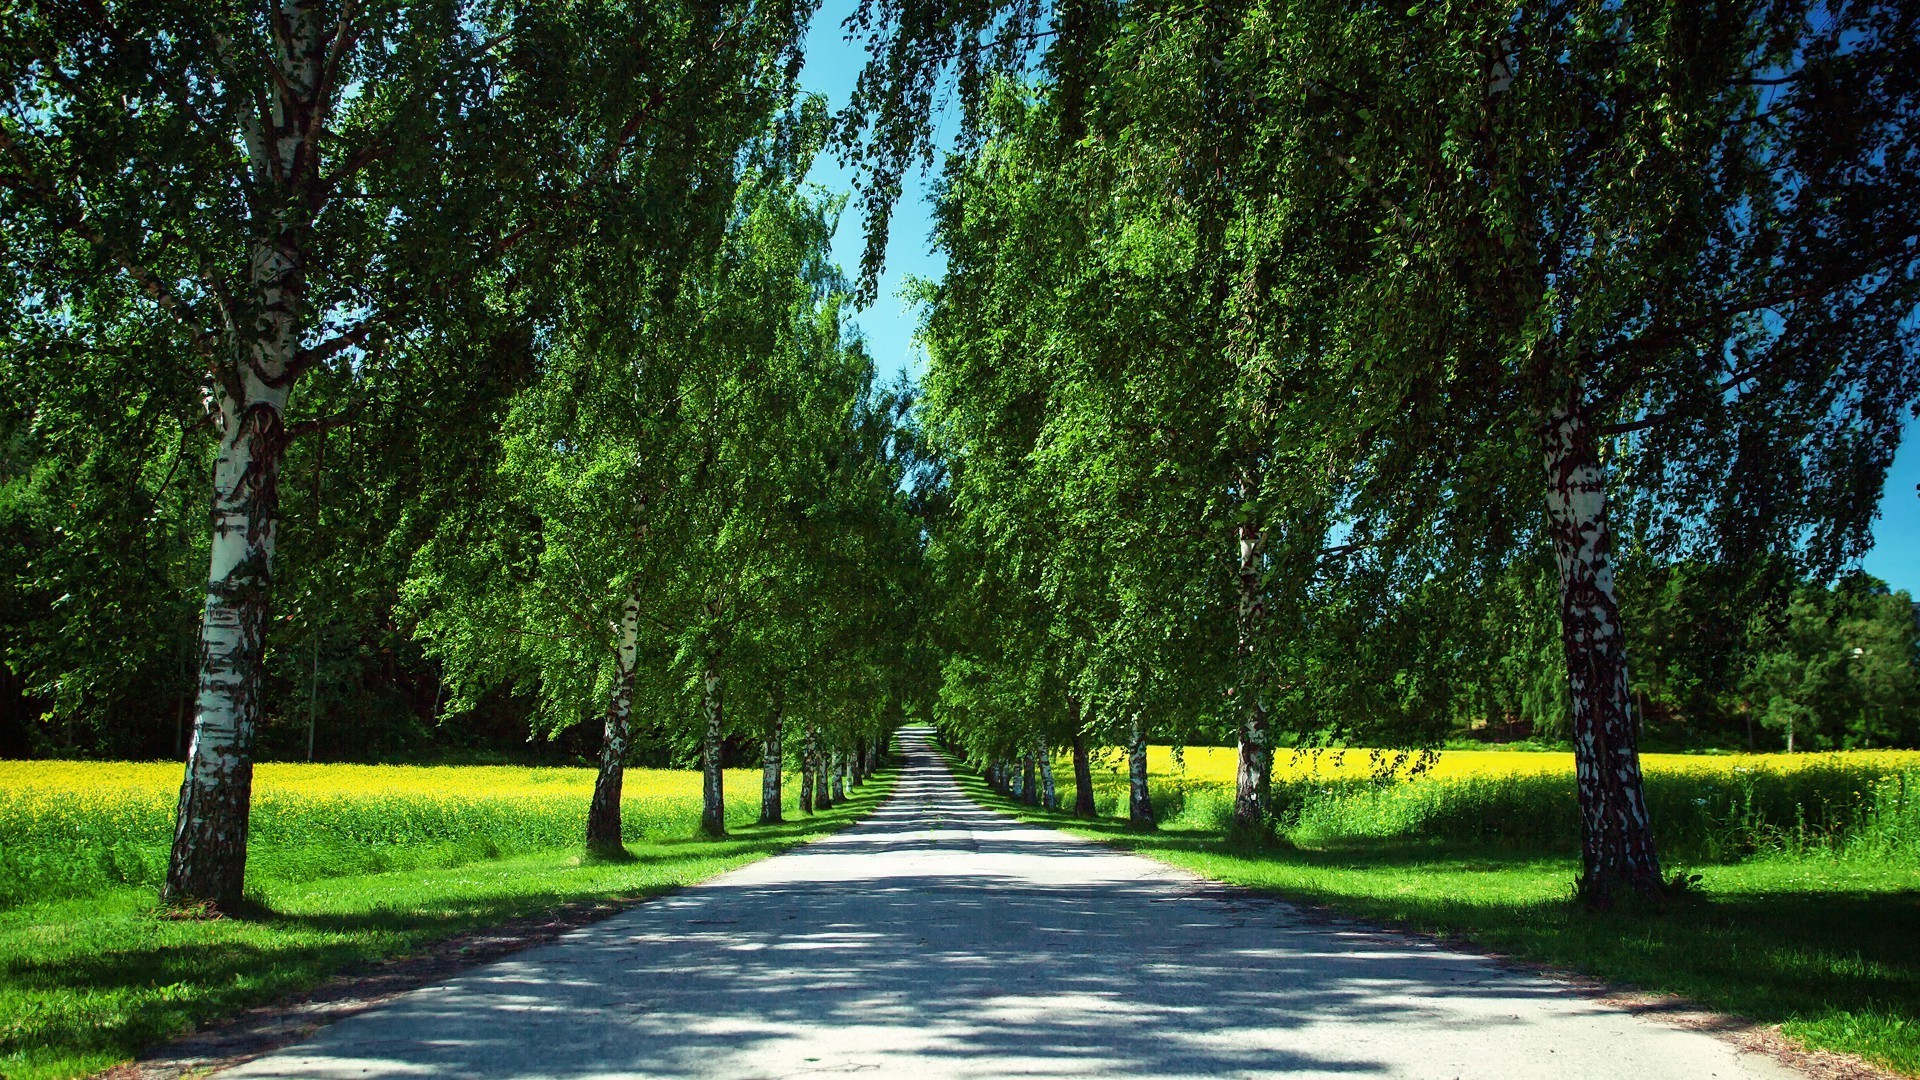 дороги дерево пейзаж руководство природа лист парк сельских трава древесины среды лето хорошую погоду аллея переулок на открытом воздухе яркий сезон страна